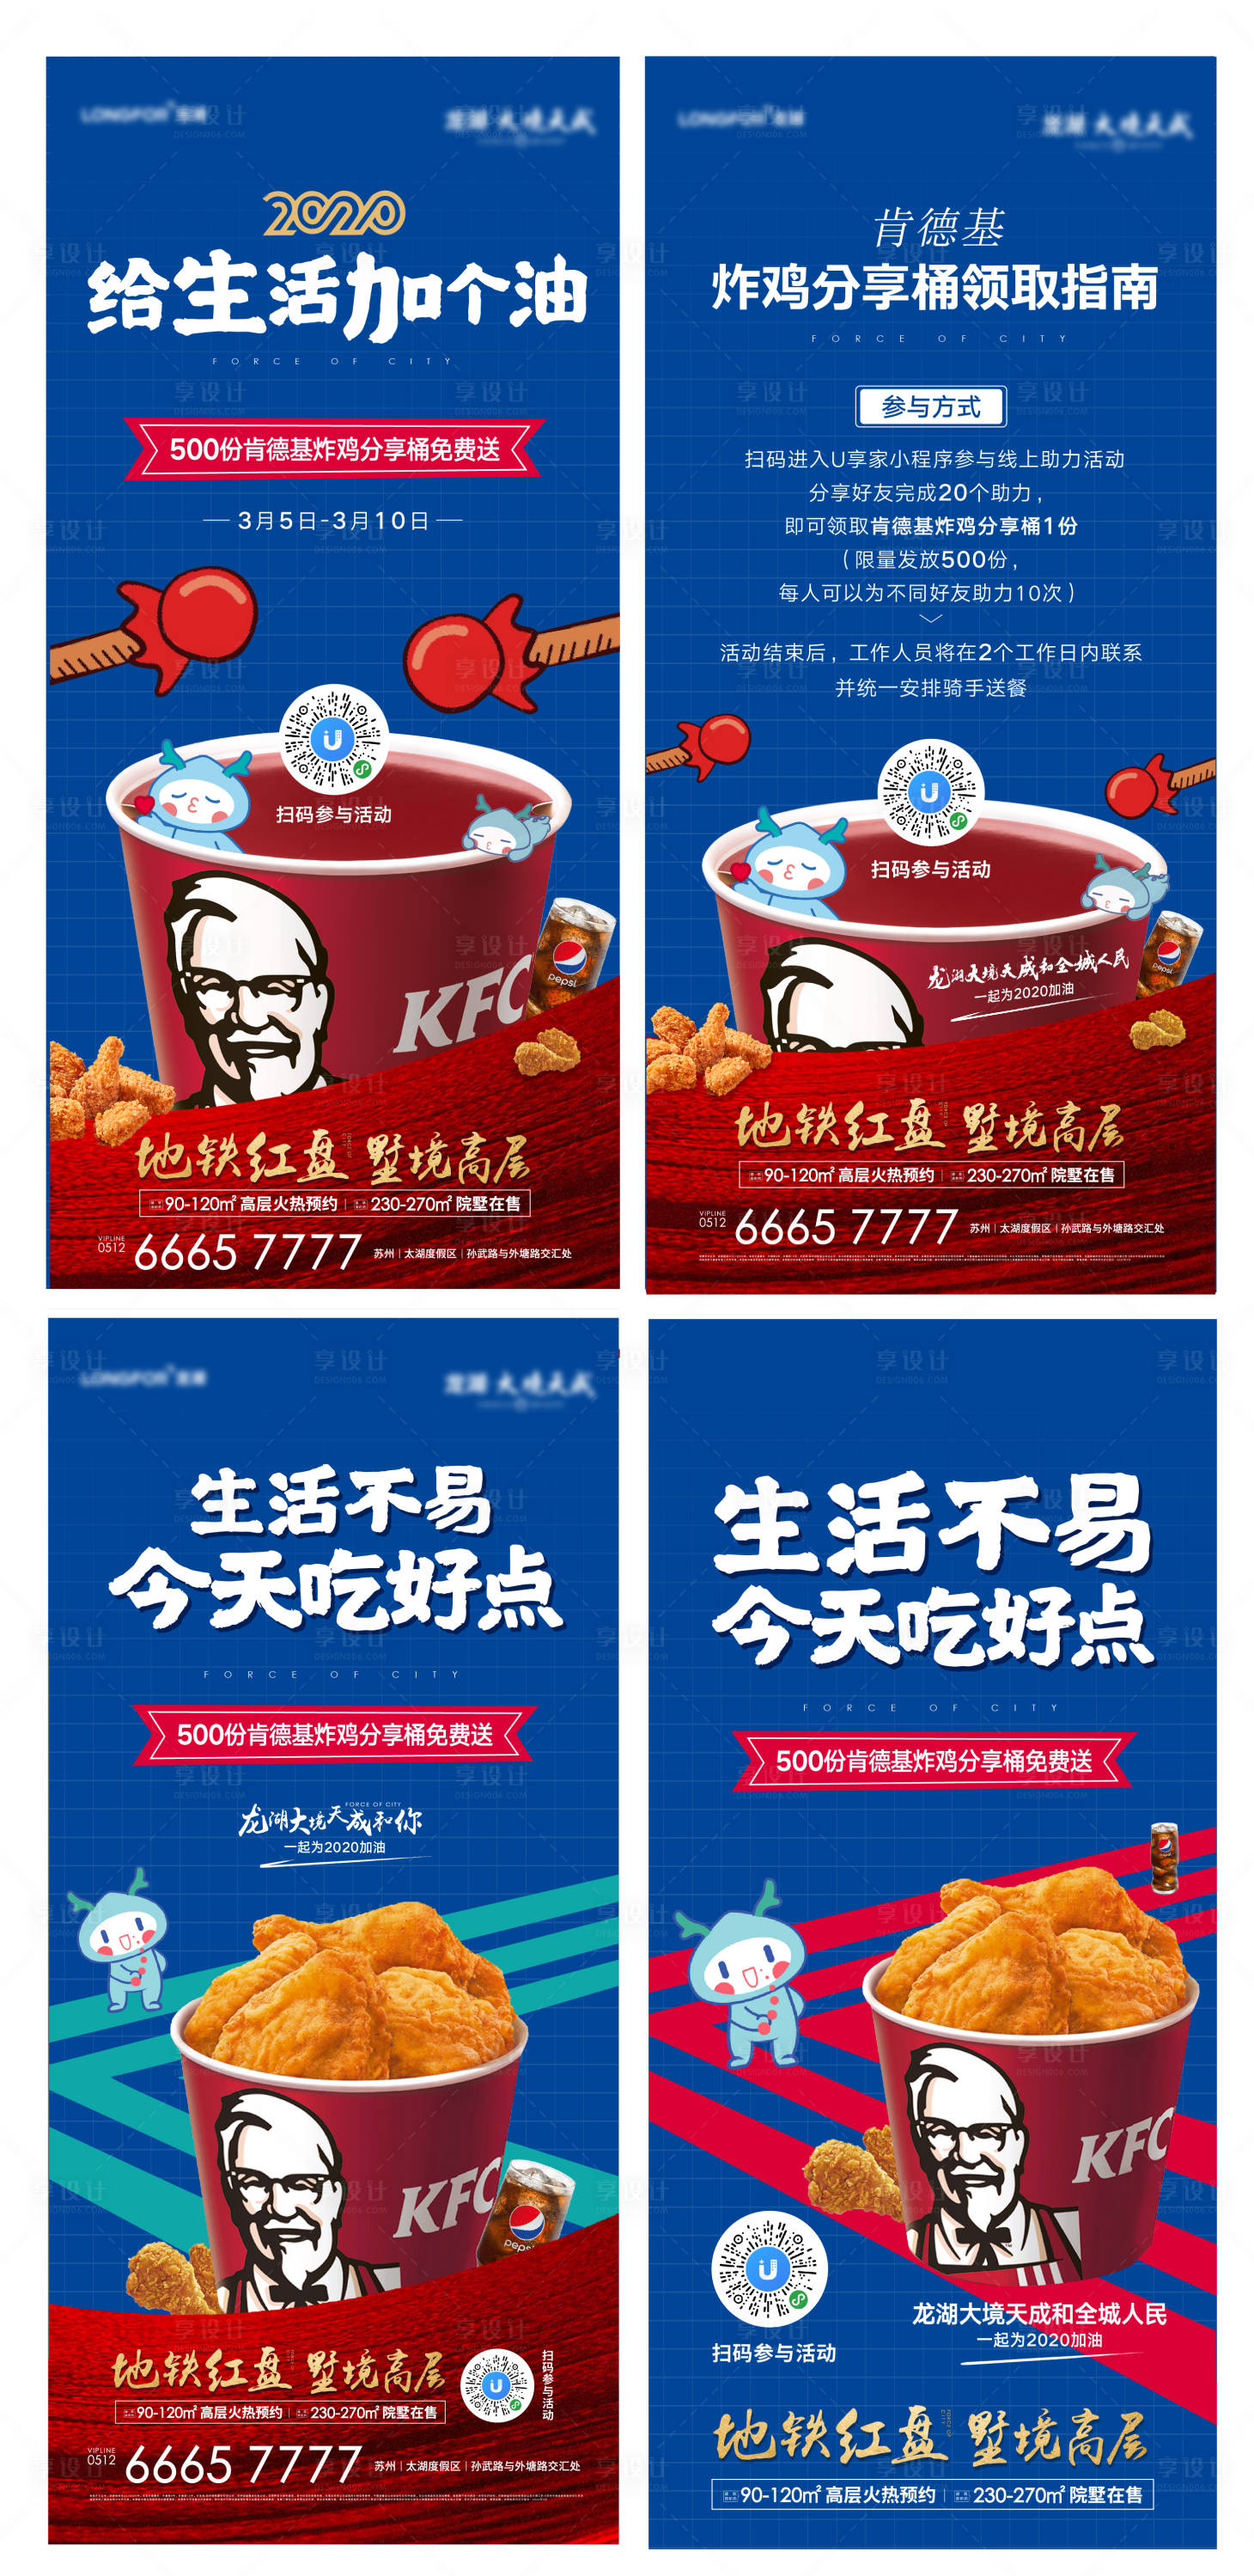 KFC特别优惠：2份餐点只需RM19.99